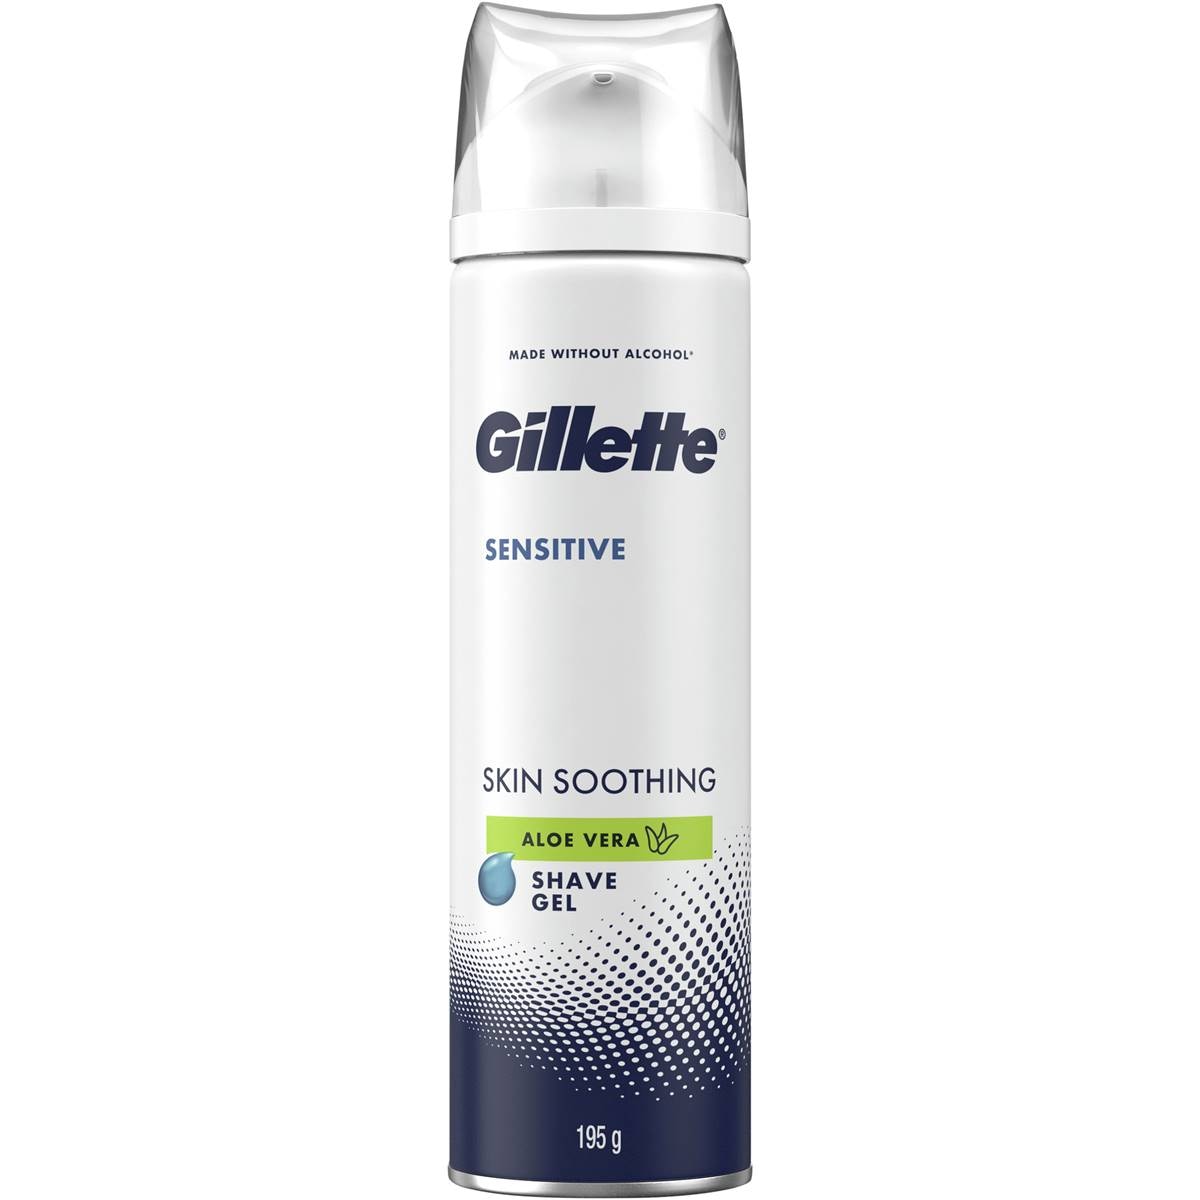 Gillette Sensitive Shave Gel Skin Soothing Aloe Vera 195g